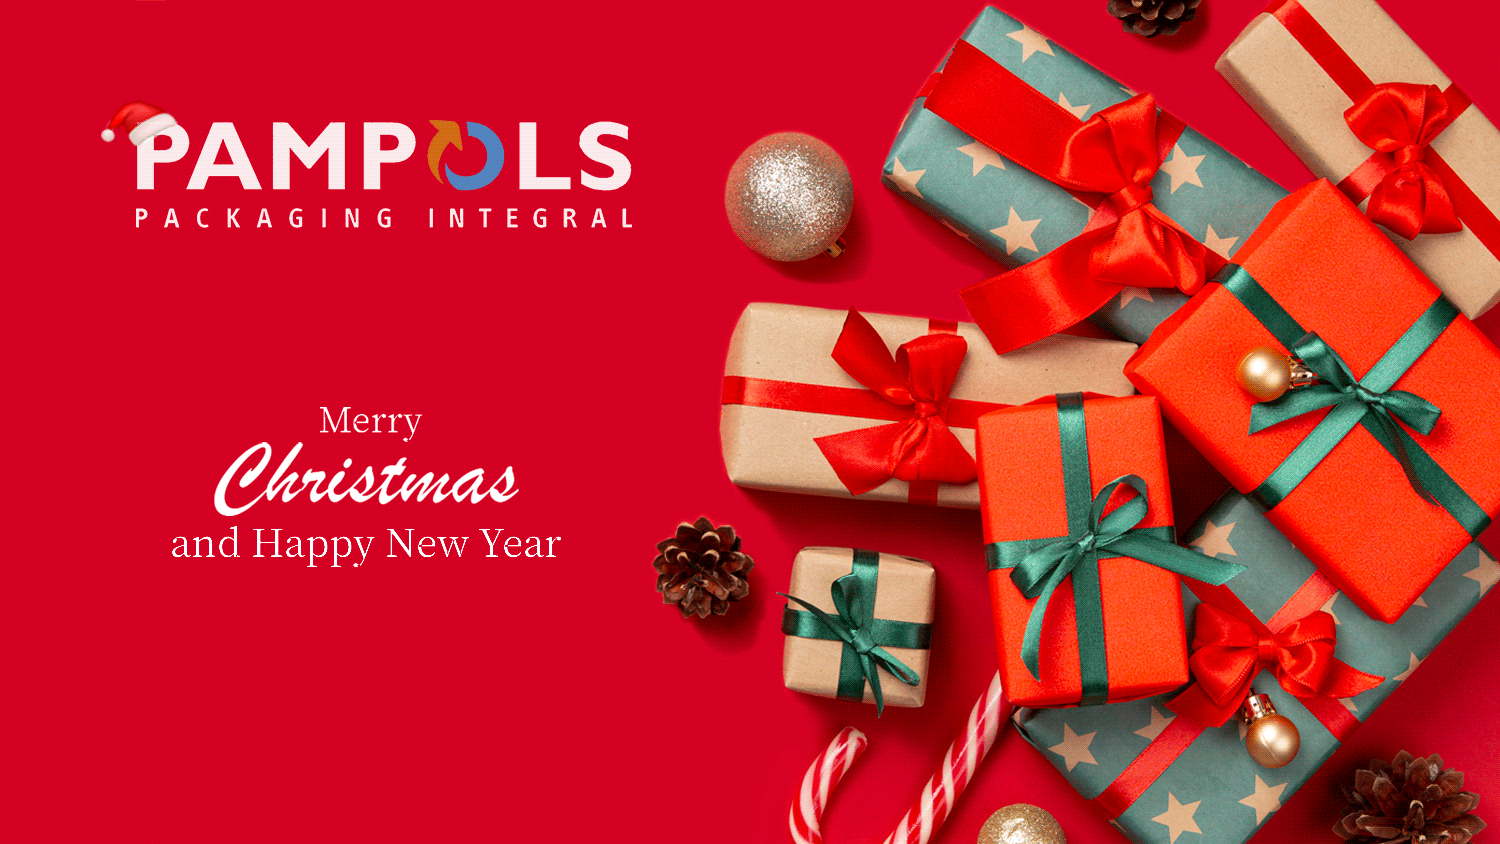 Esta Navidad, tú eres nuestro regalo. ¡GRACIAS y FELICES FIESTAS!